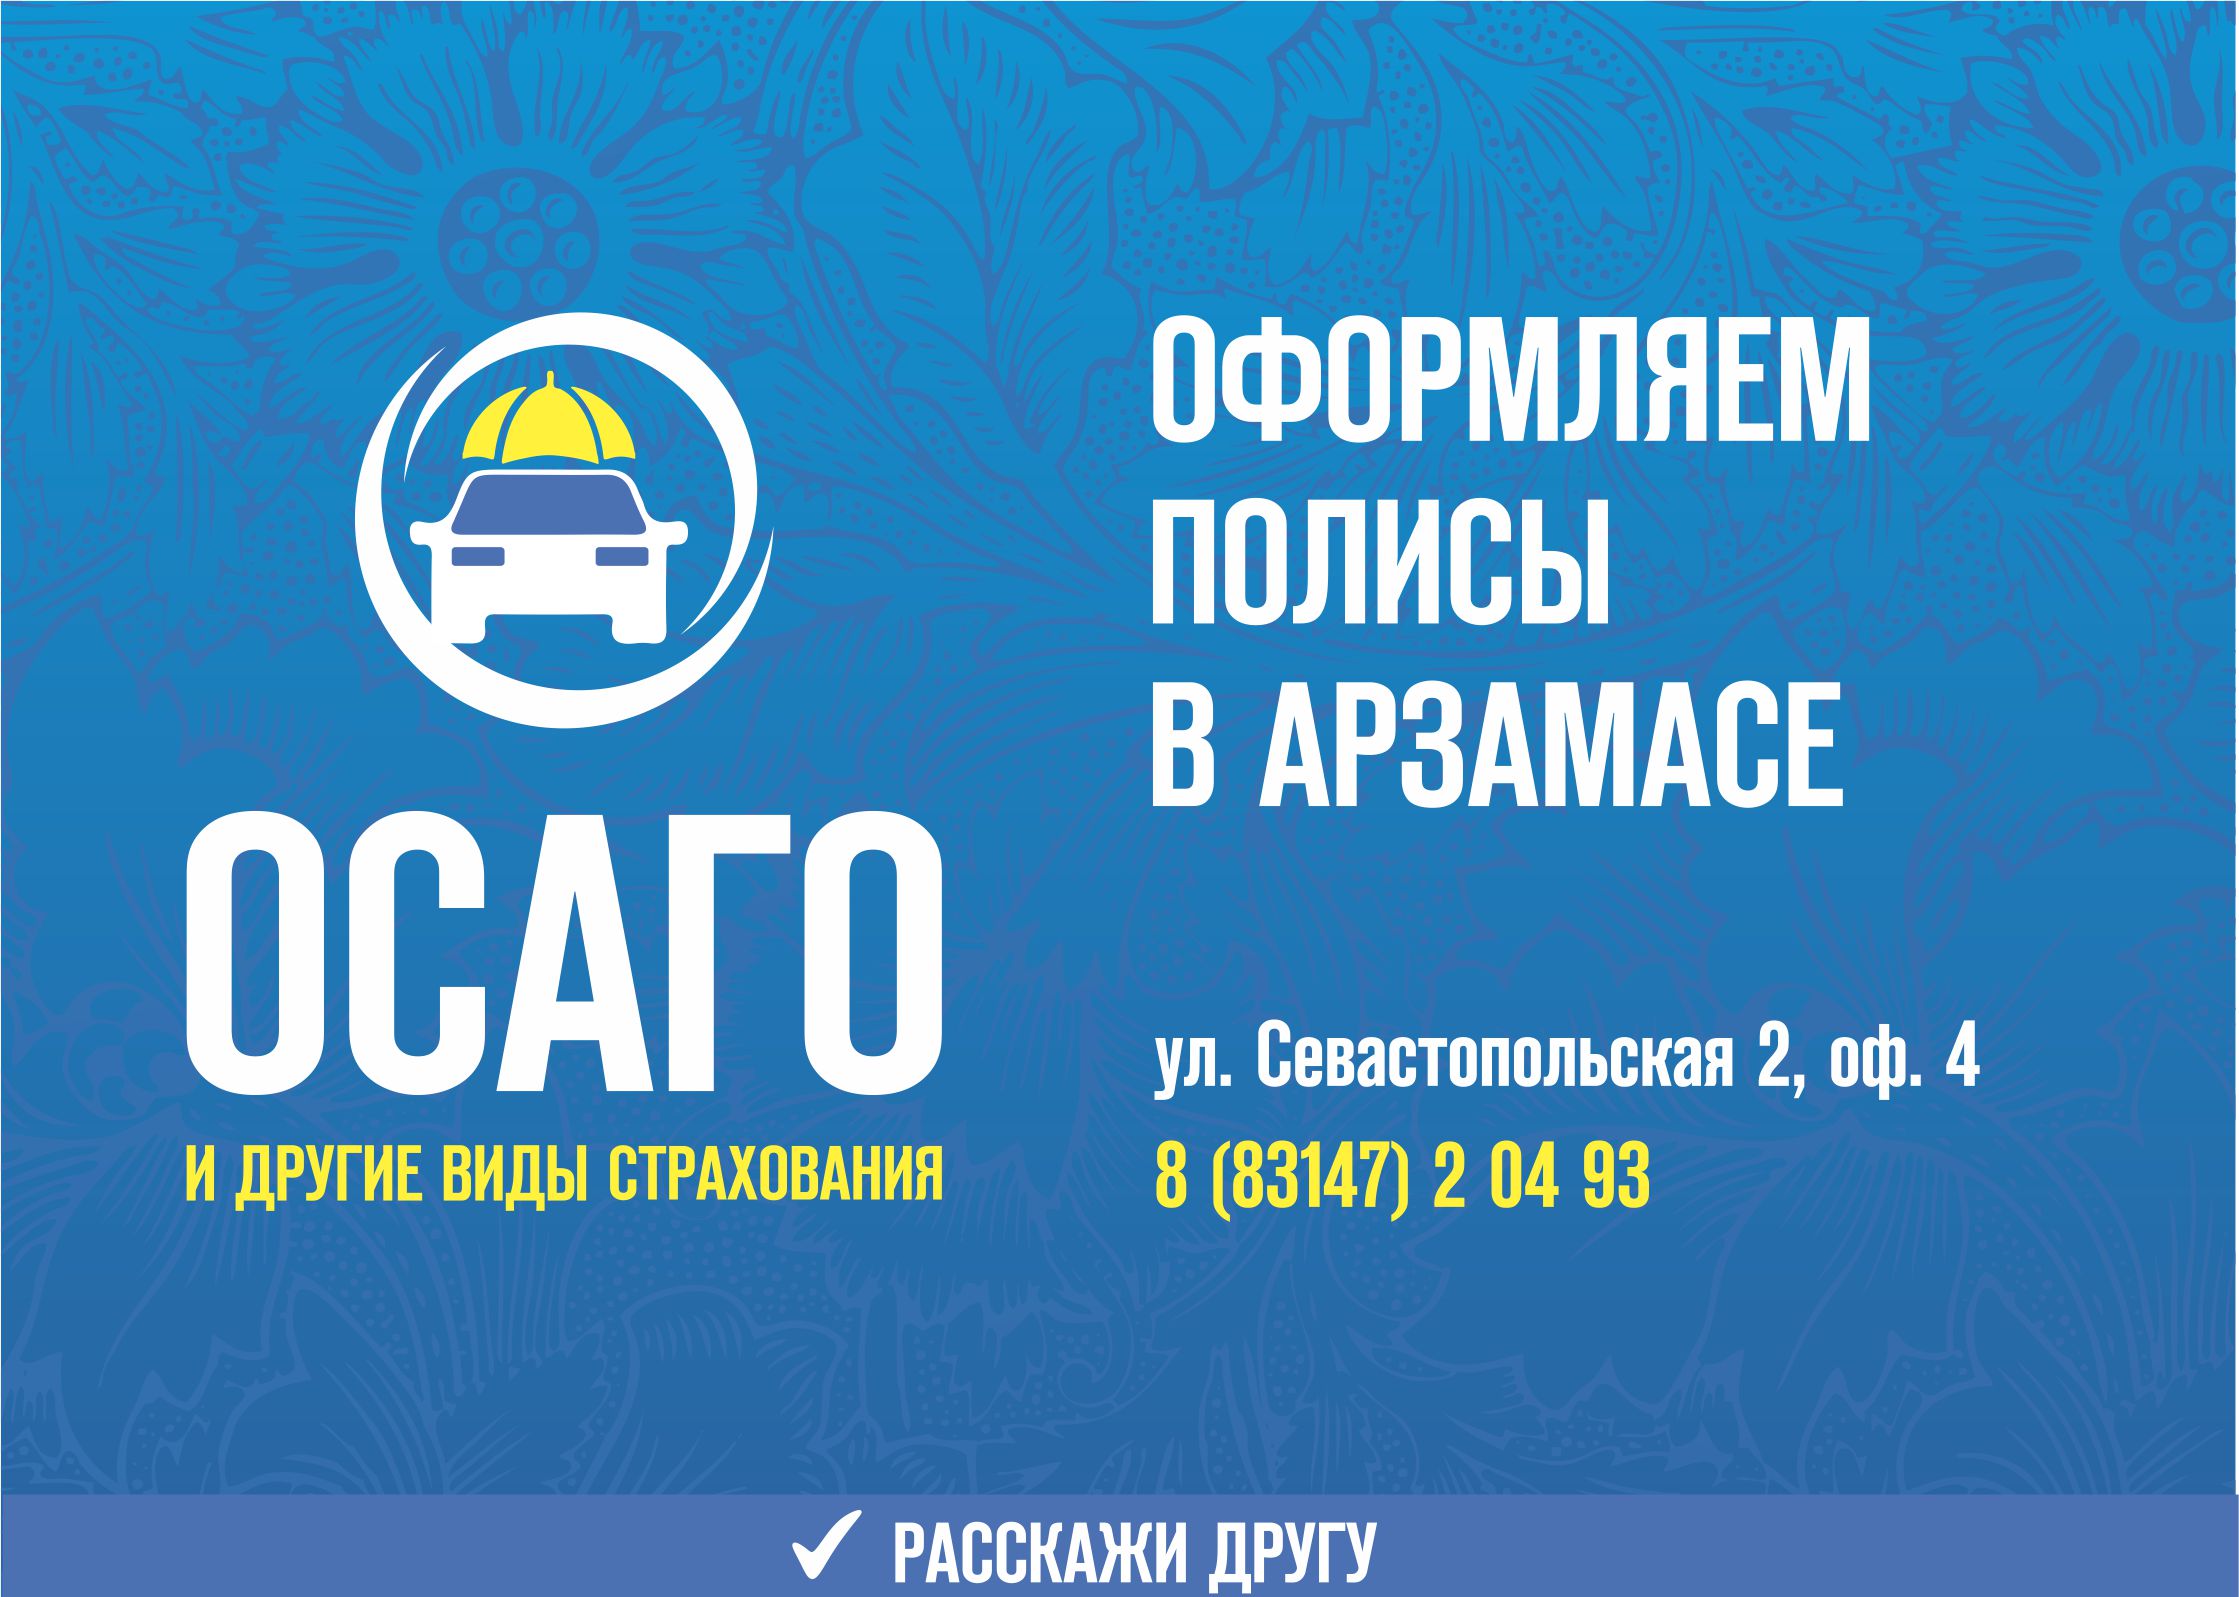 Оформляем полисы ОСАГО в Арзамасе по адресу: ул. Севастопольская 2, офис 4. Телефон в Арзамасе: 8 (83147) 2-04-93 с понедельника по субботу.